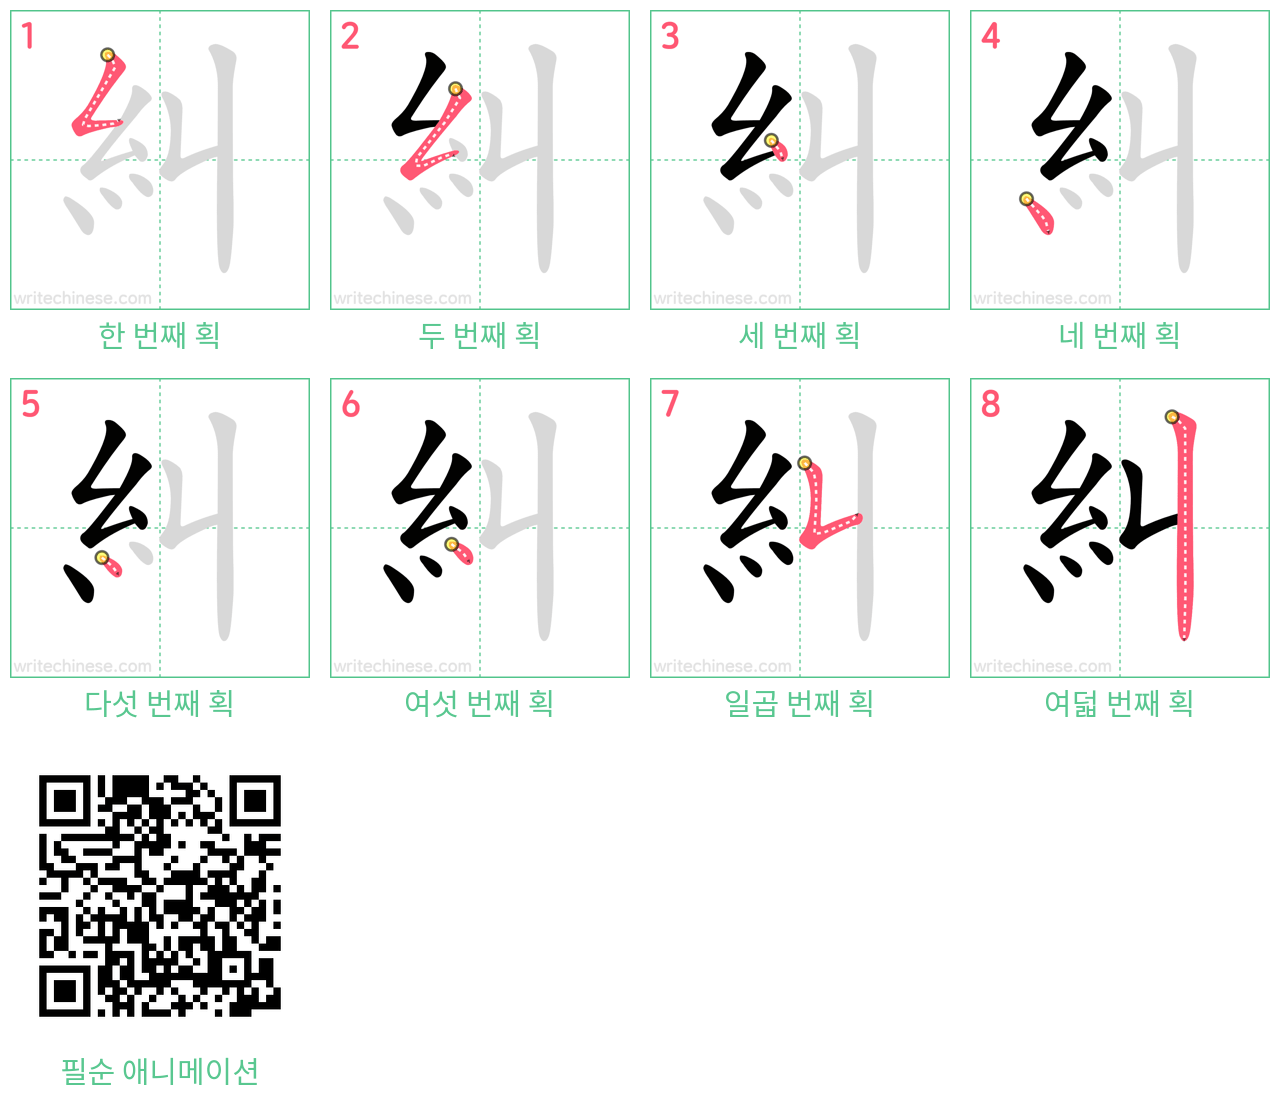 糾 step-by-step stroke order diagrams